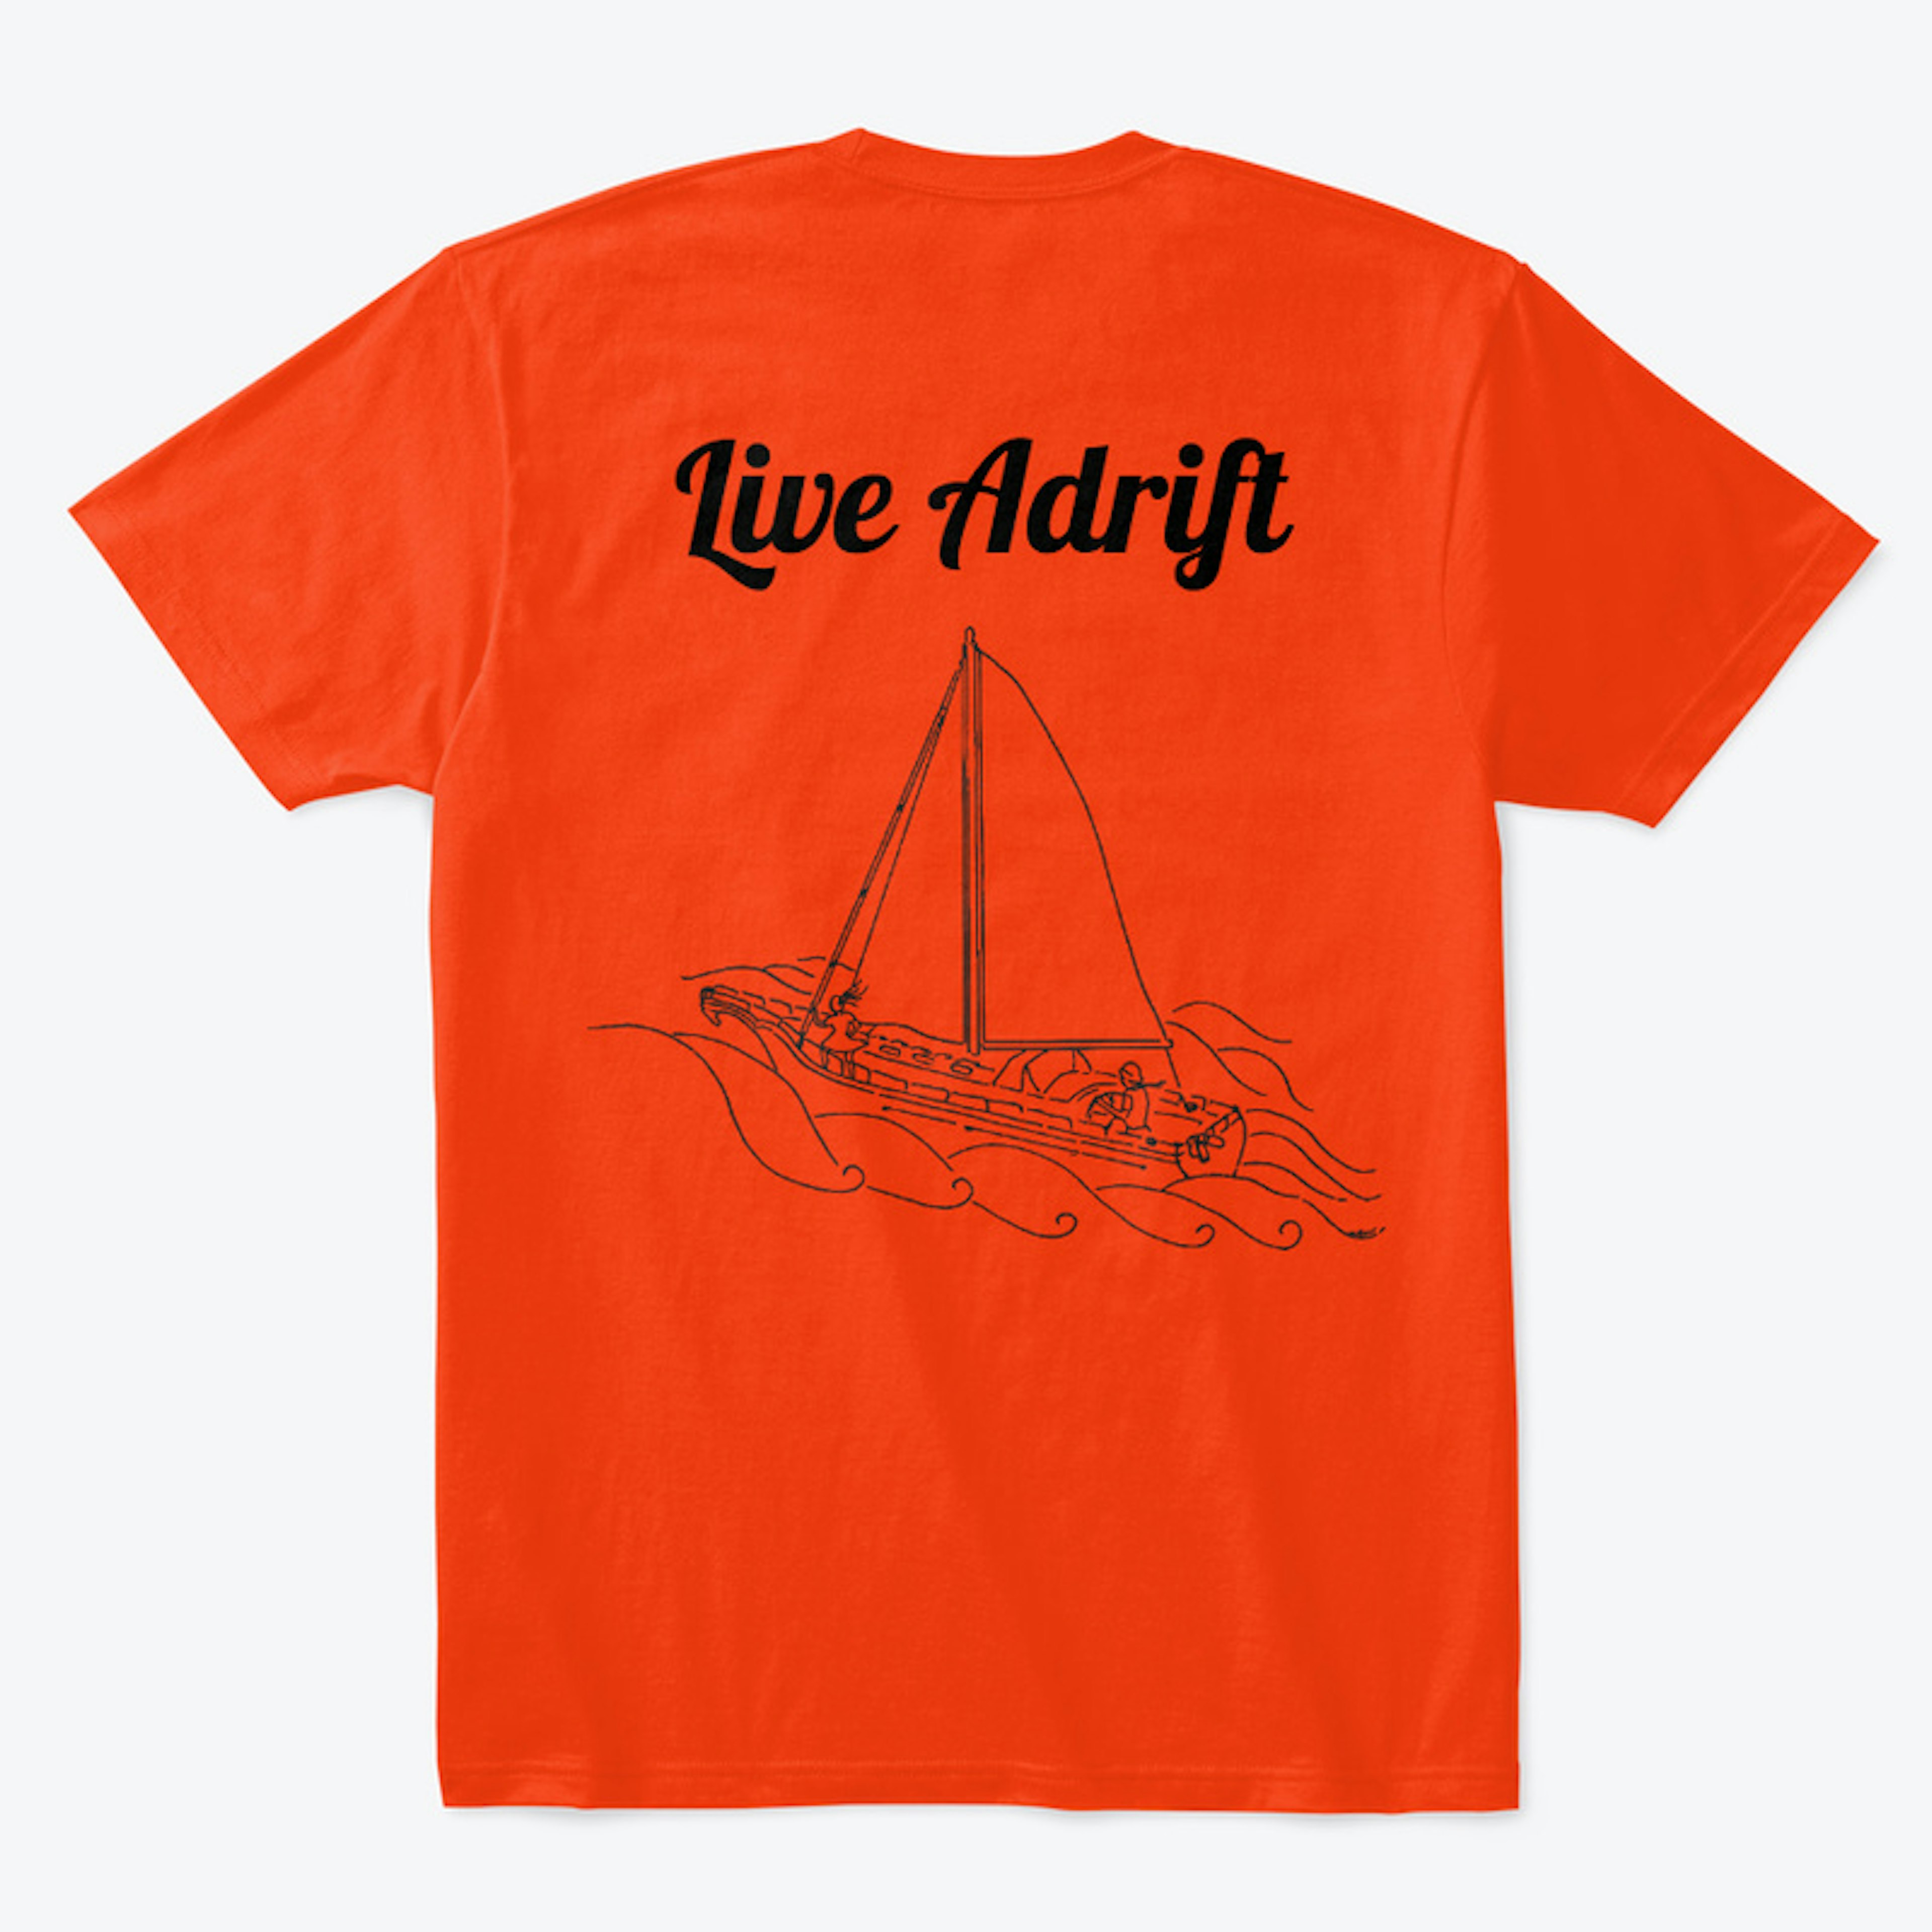 Live Adrift - Original